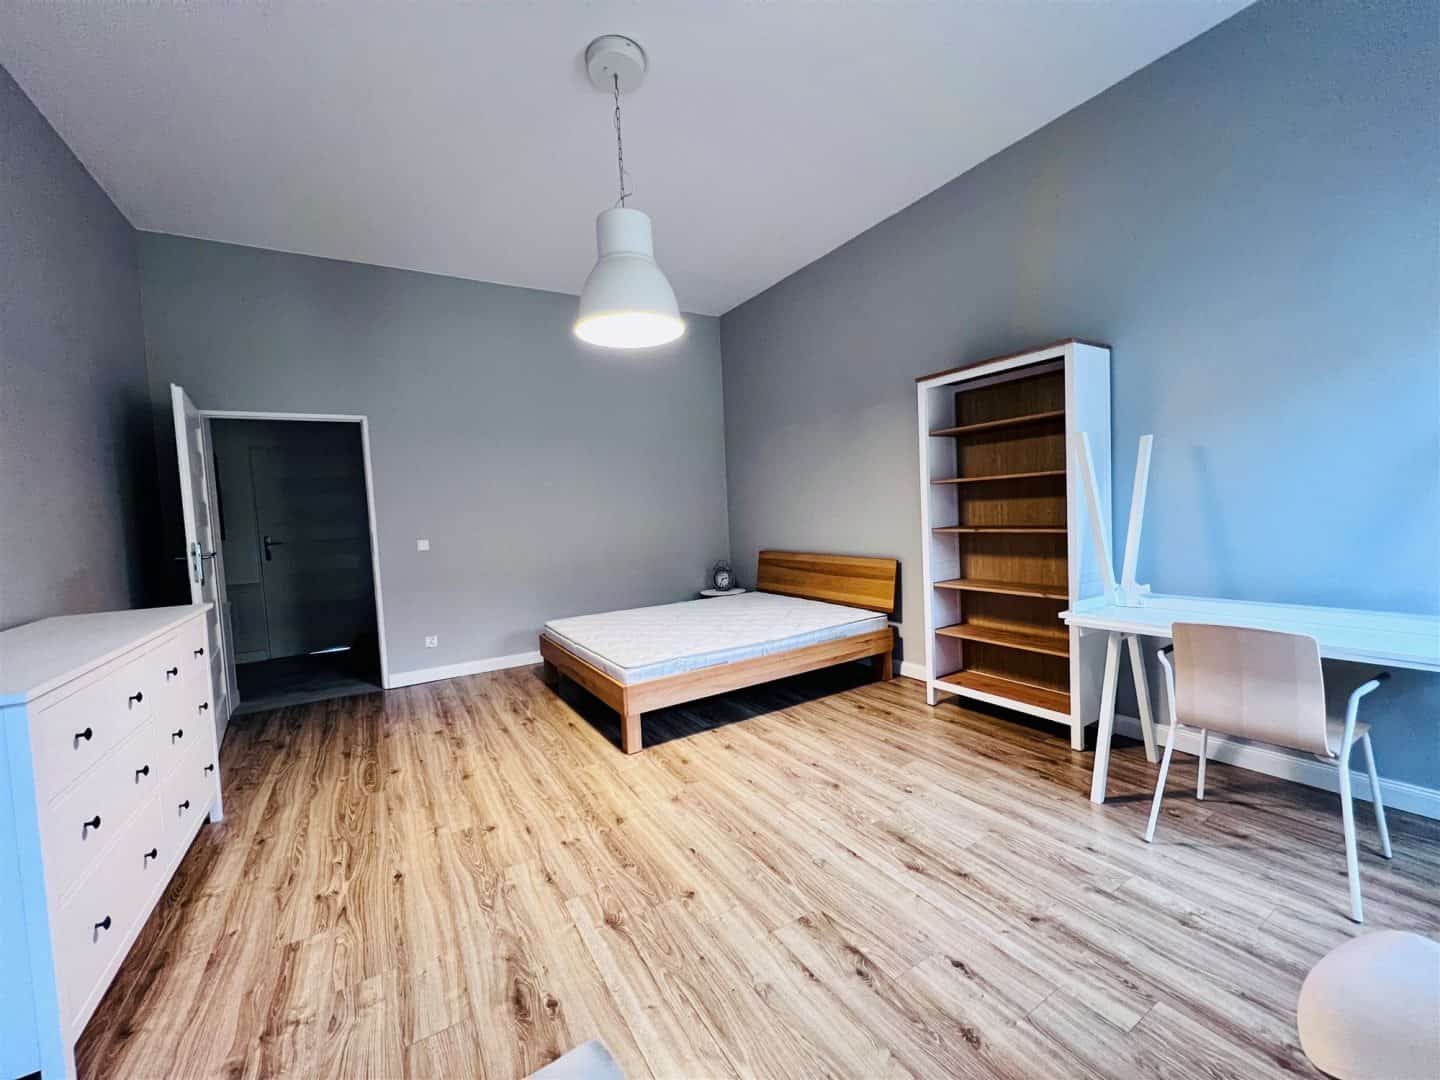 mieszkanie na wynajem - Szczecin, Centrum - ID 4KAT-MW-22347 | swiatnieruchomosci.pl